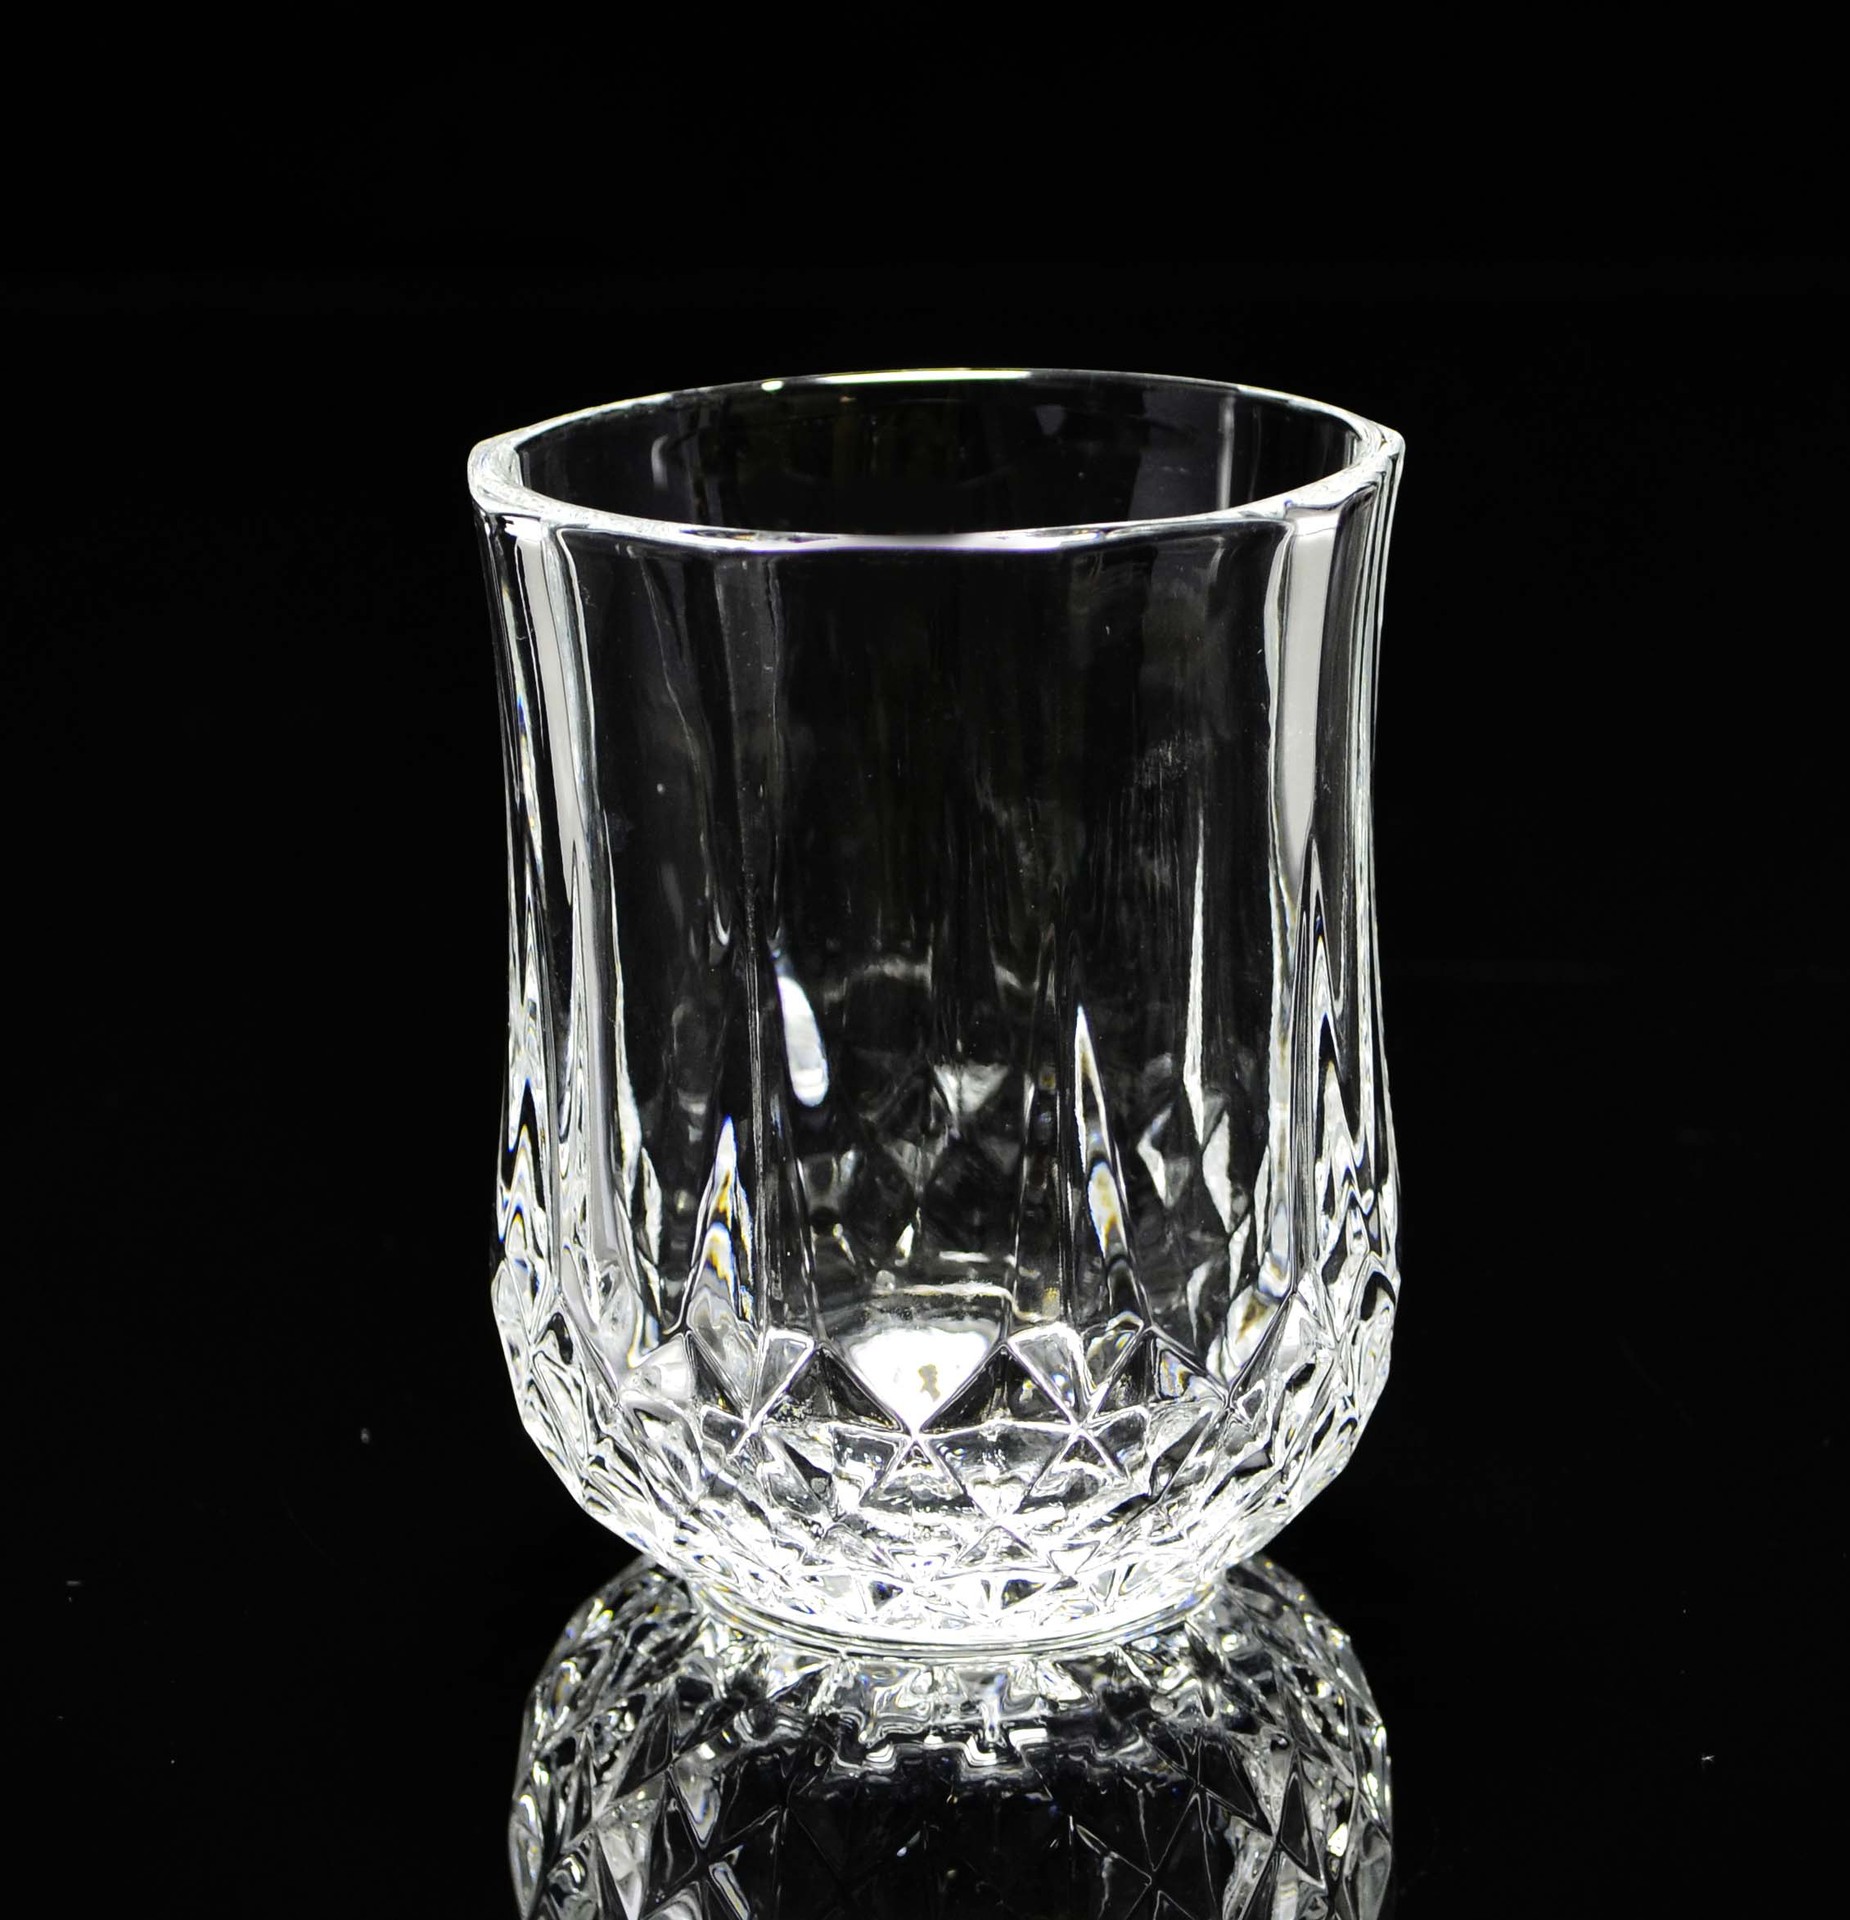 无铅品质水杯 玻璃杯 时尚耐热透明茶杯 果汁杯 创意杯子 8707